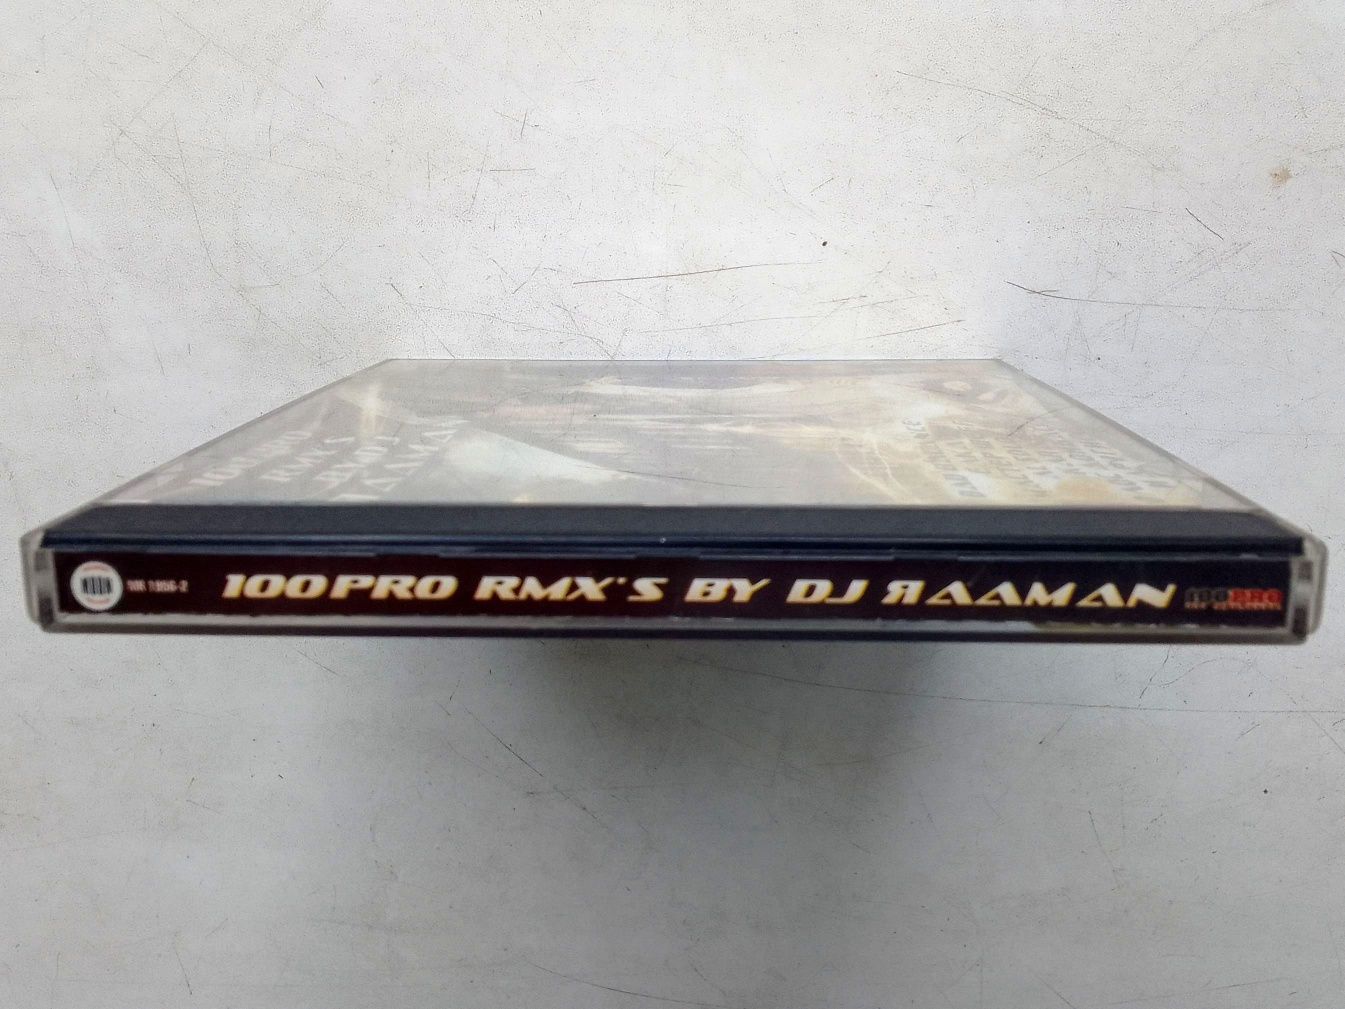 CD DJ Яааman 100PRO rap hip-hop сборник ремиксы remix rmx рэп диск